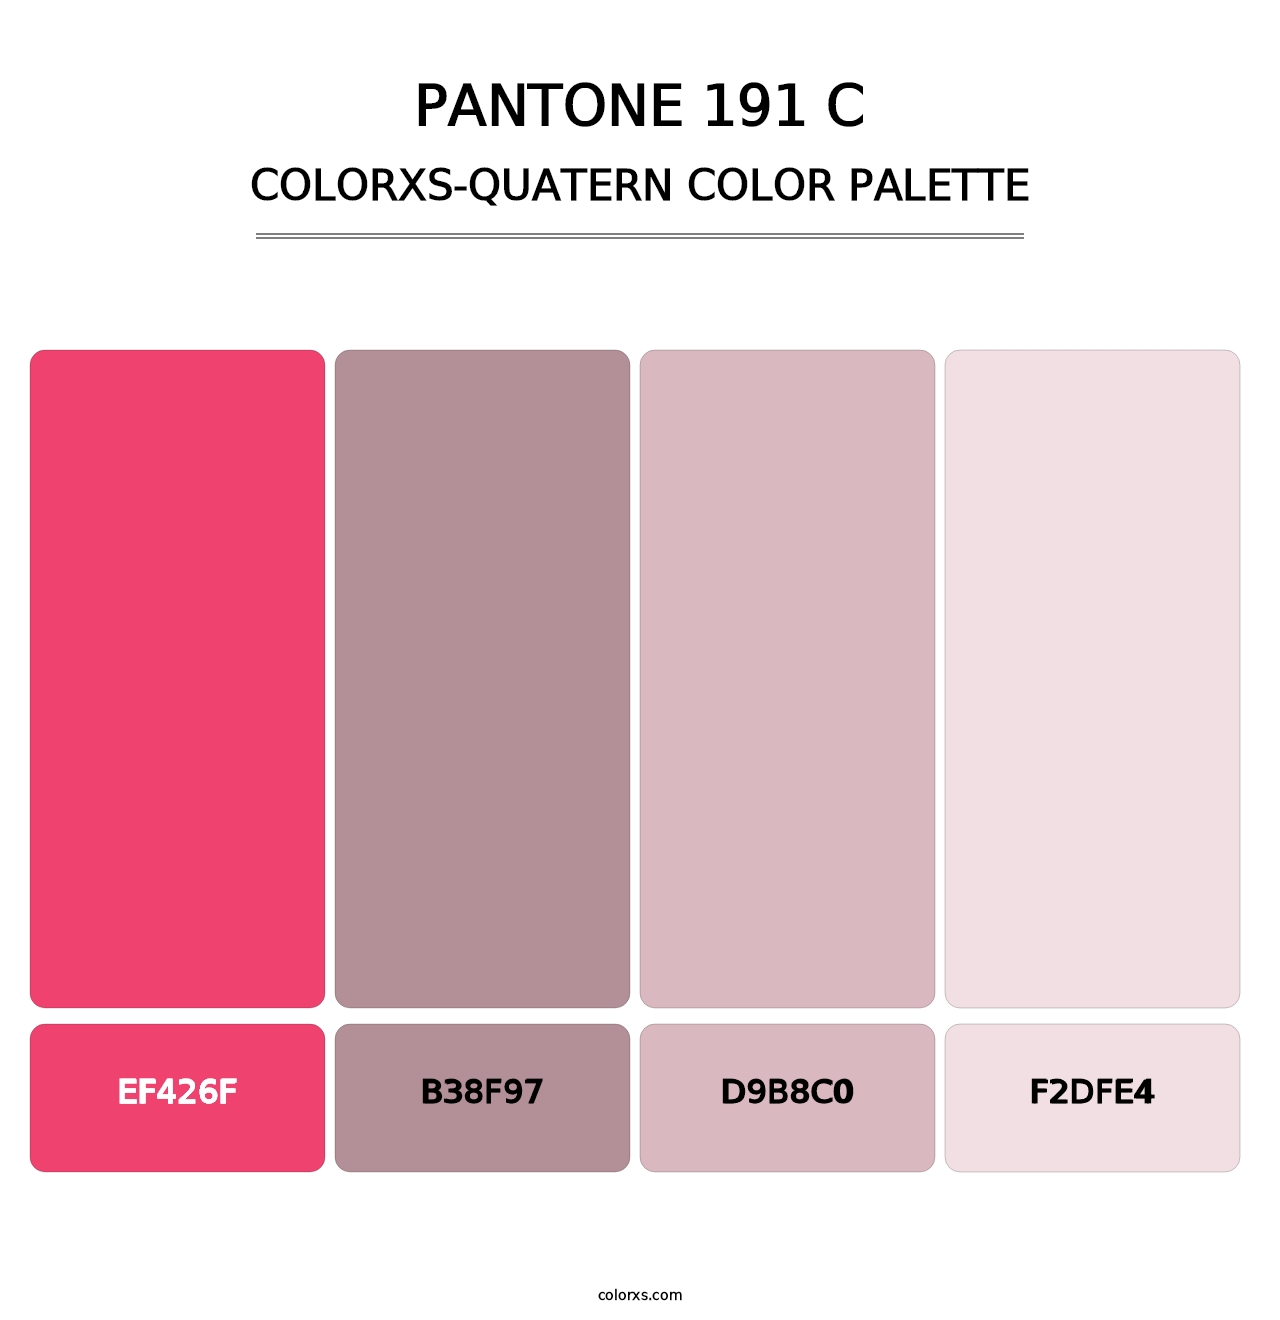 PANTONE 191 C - Colorxs Quatern Palette